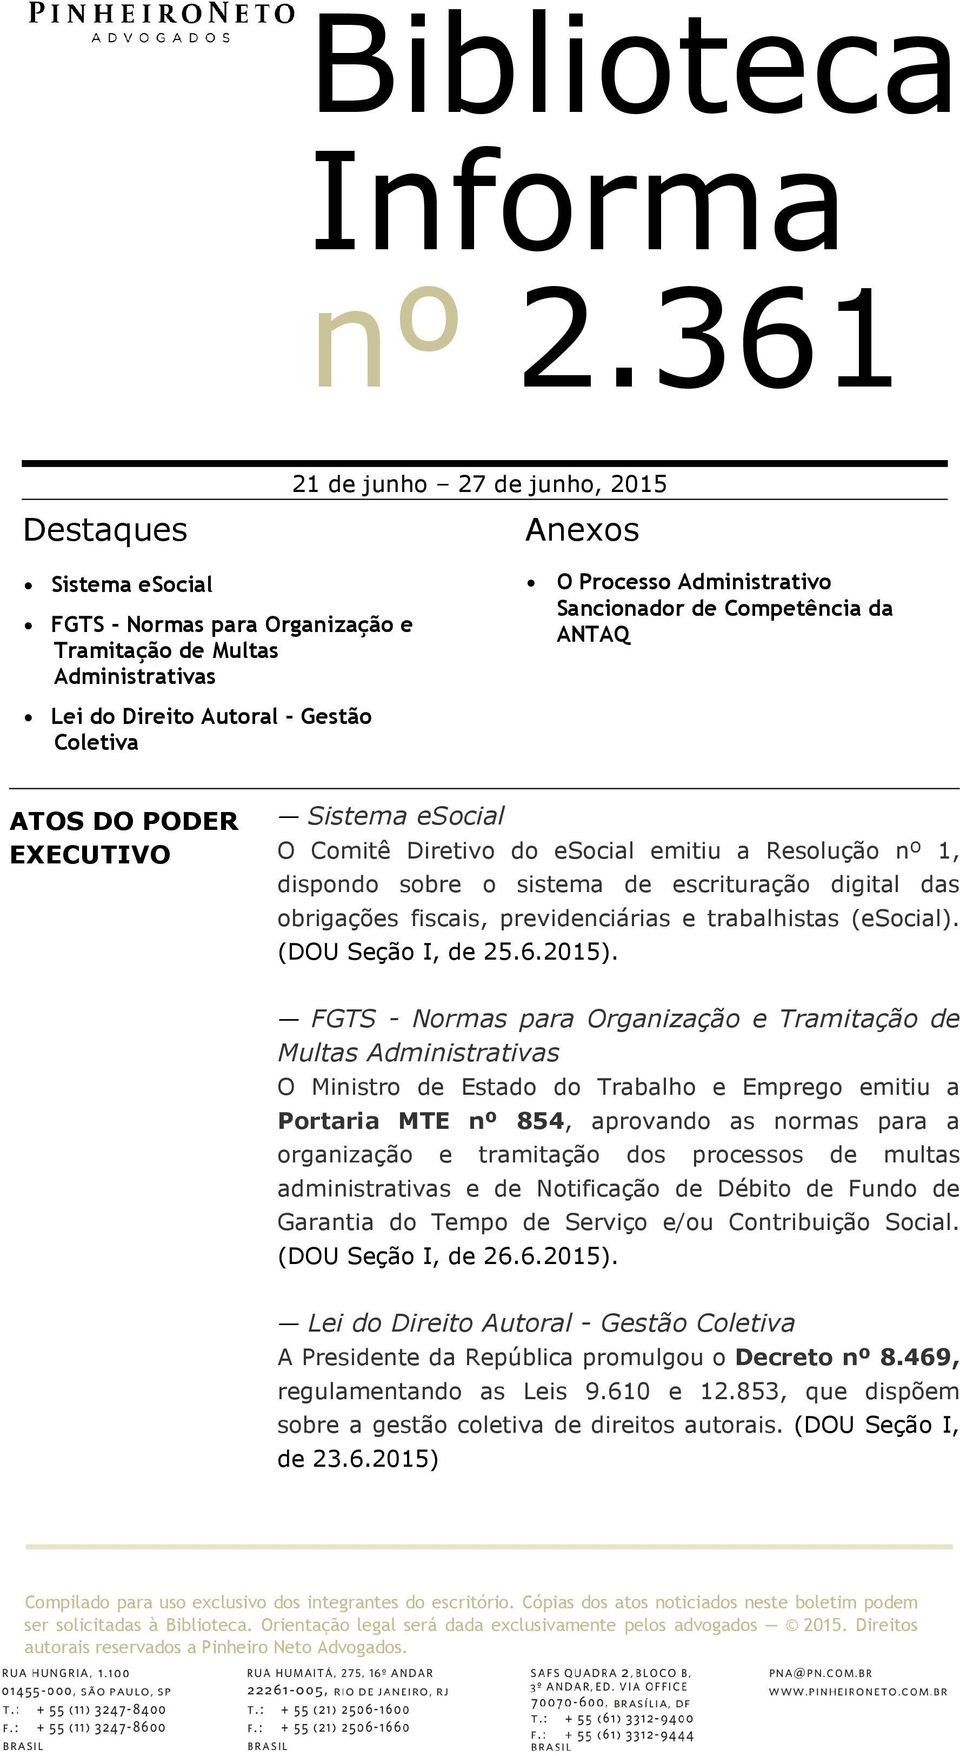 previdenciárias e trabalhistas (esocial). (DOU Seção I, de 25.6.2015).